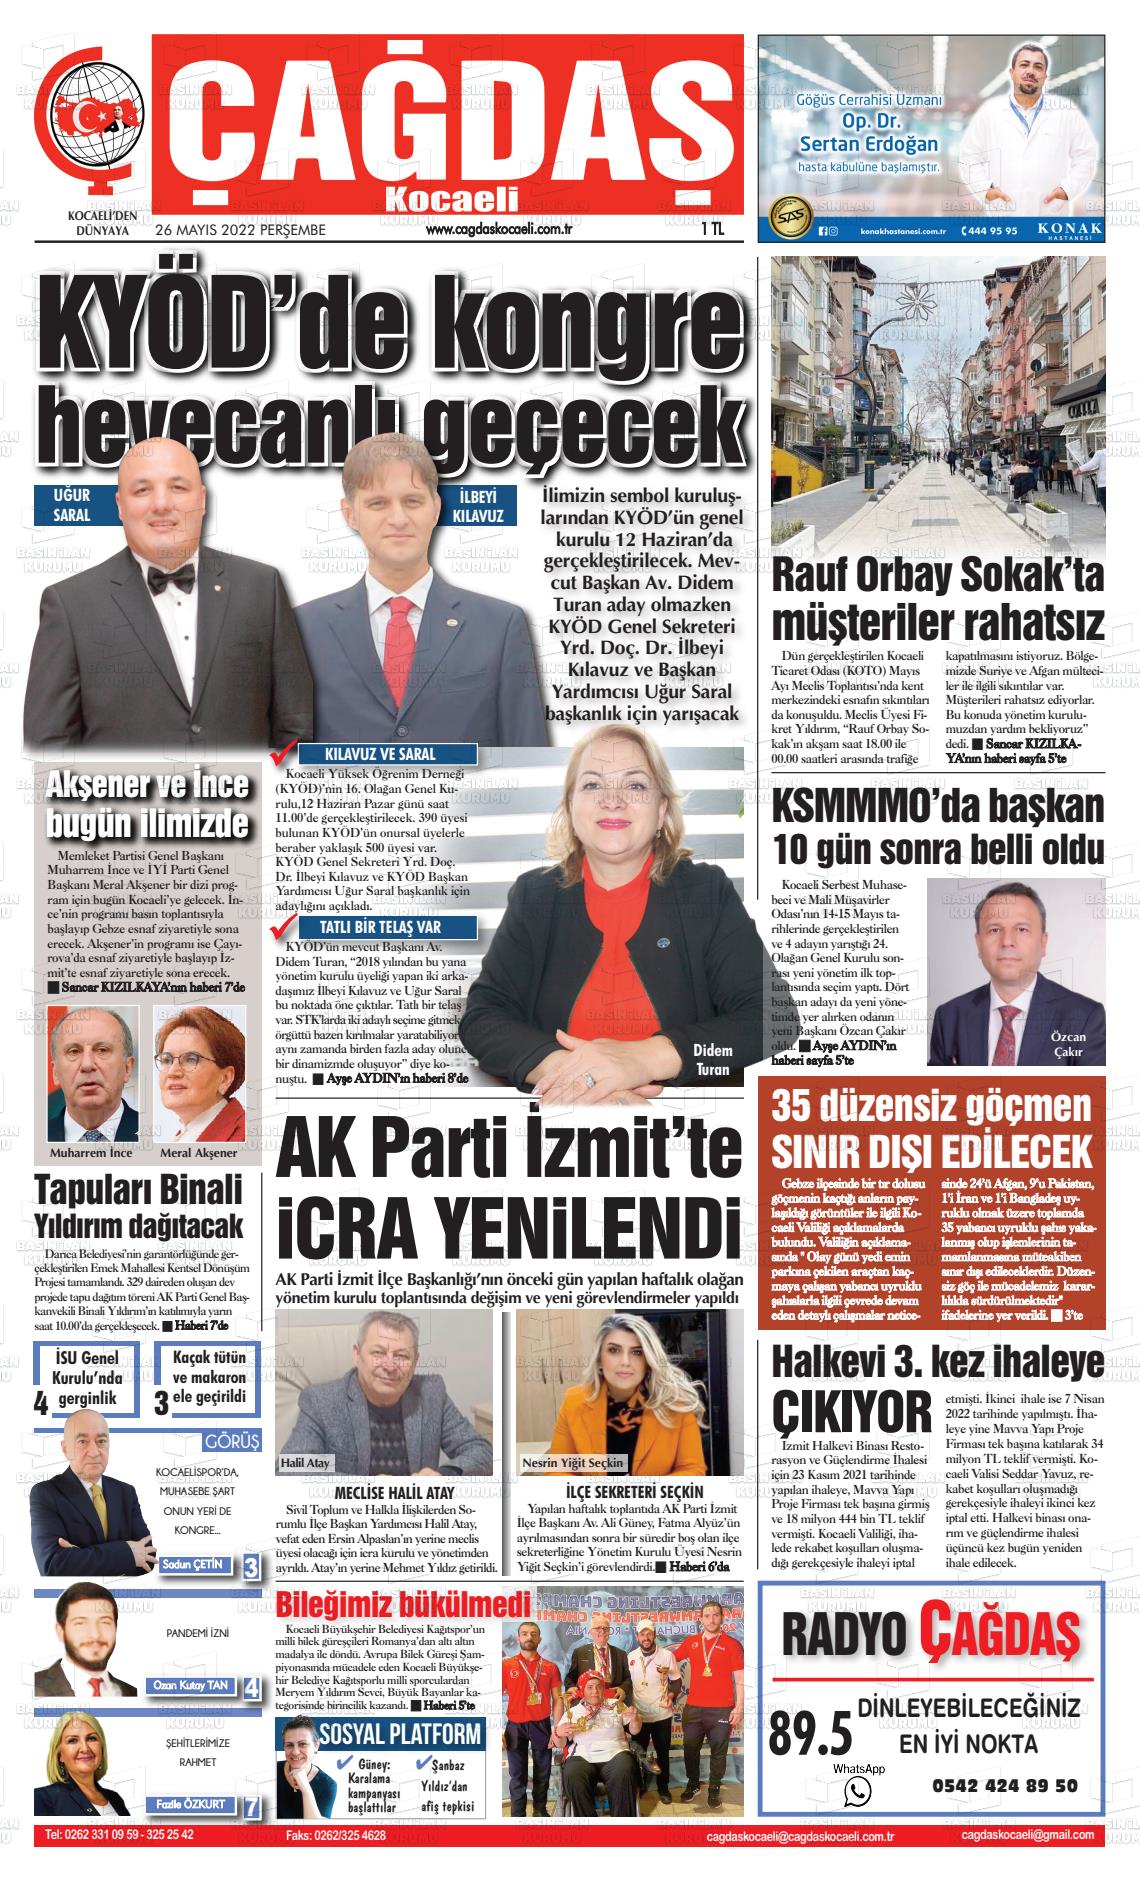 26 Mayıs 2022 Çağdaş Kocaeli Gazete Manşeti